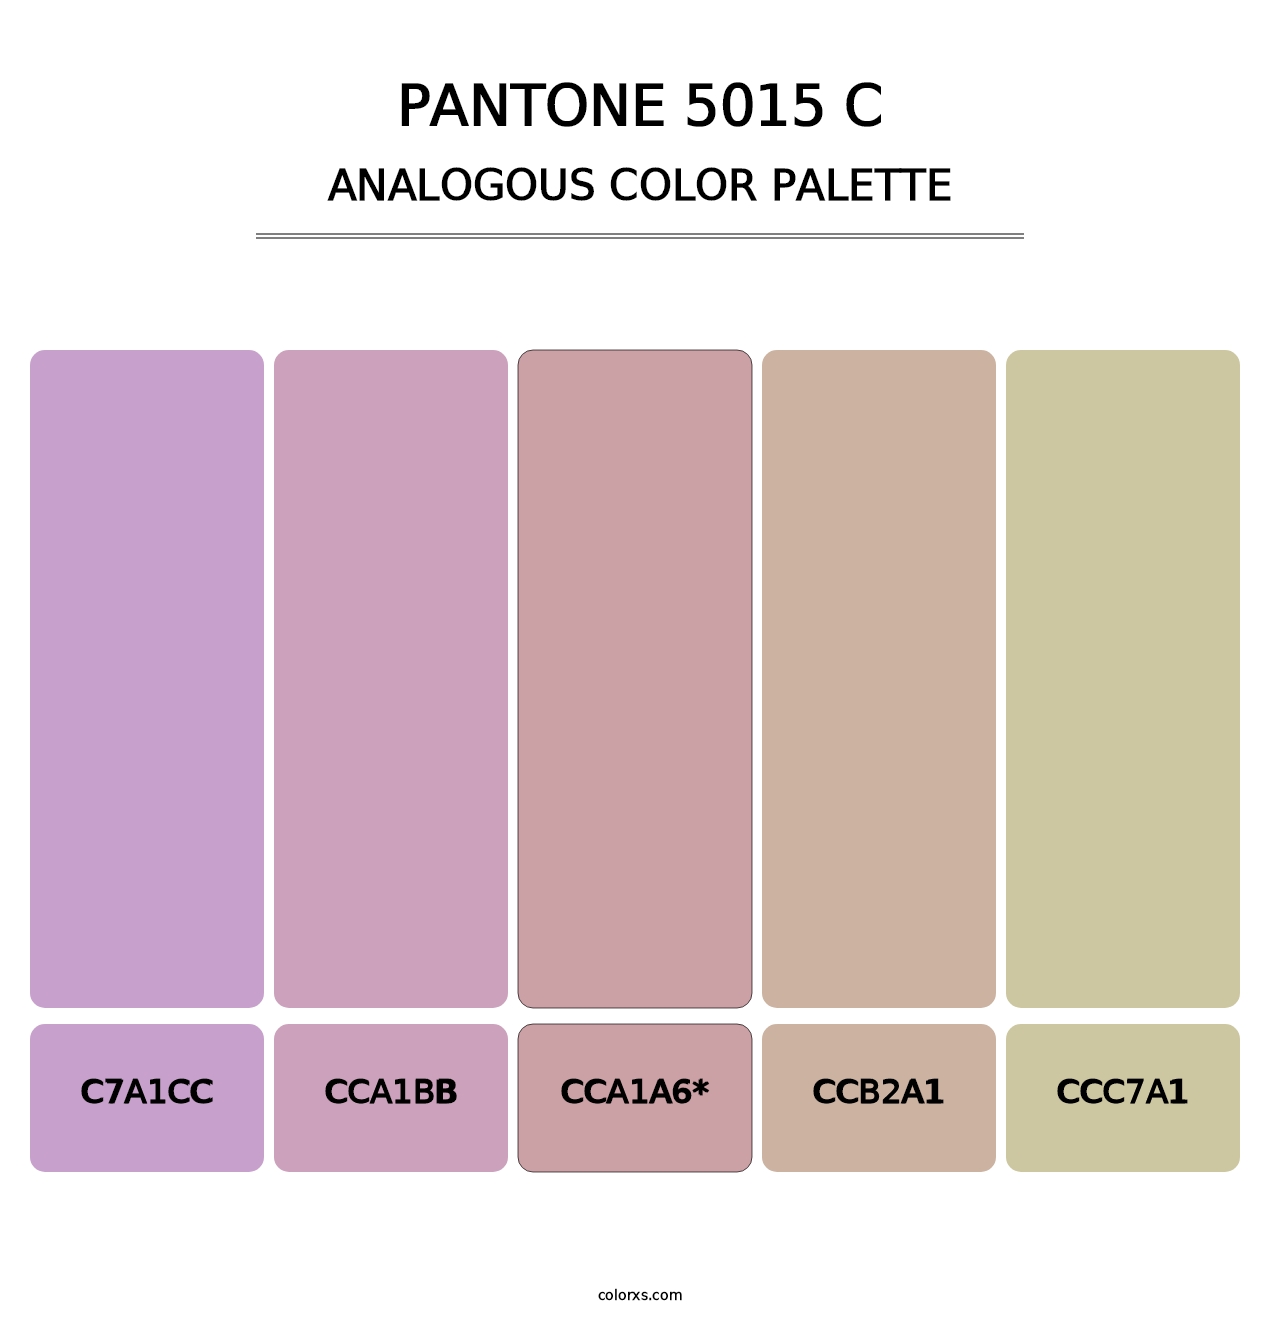 PANTONE 5015 C - Analogous Color Palette